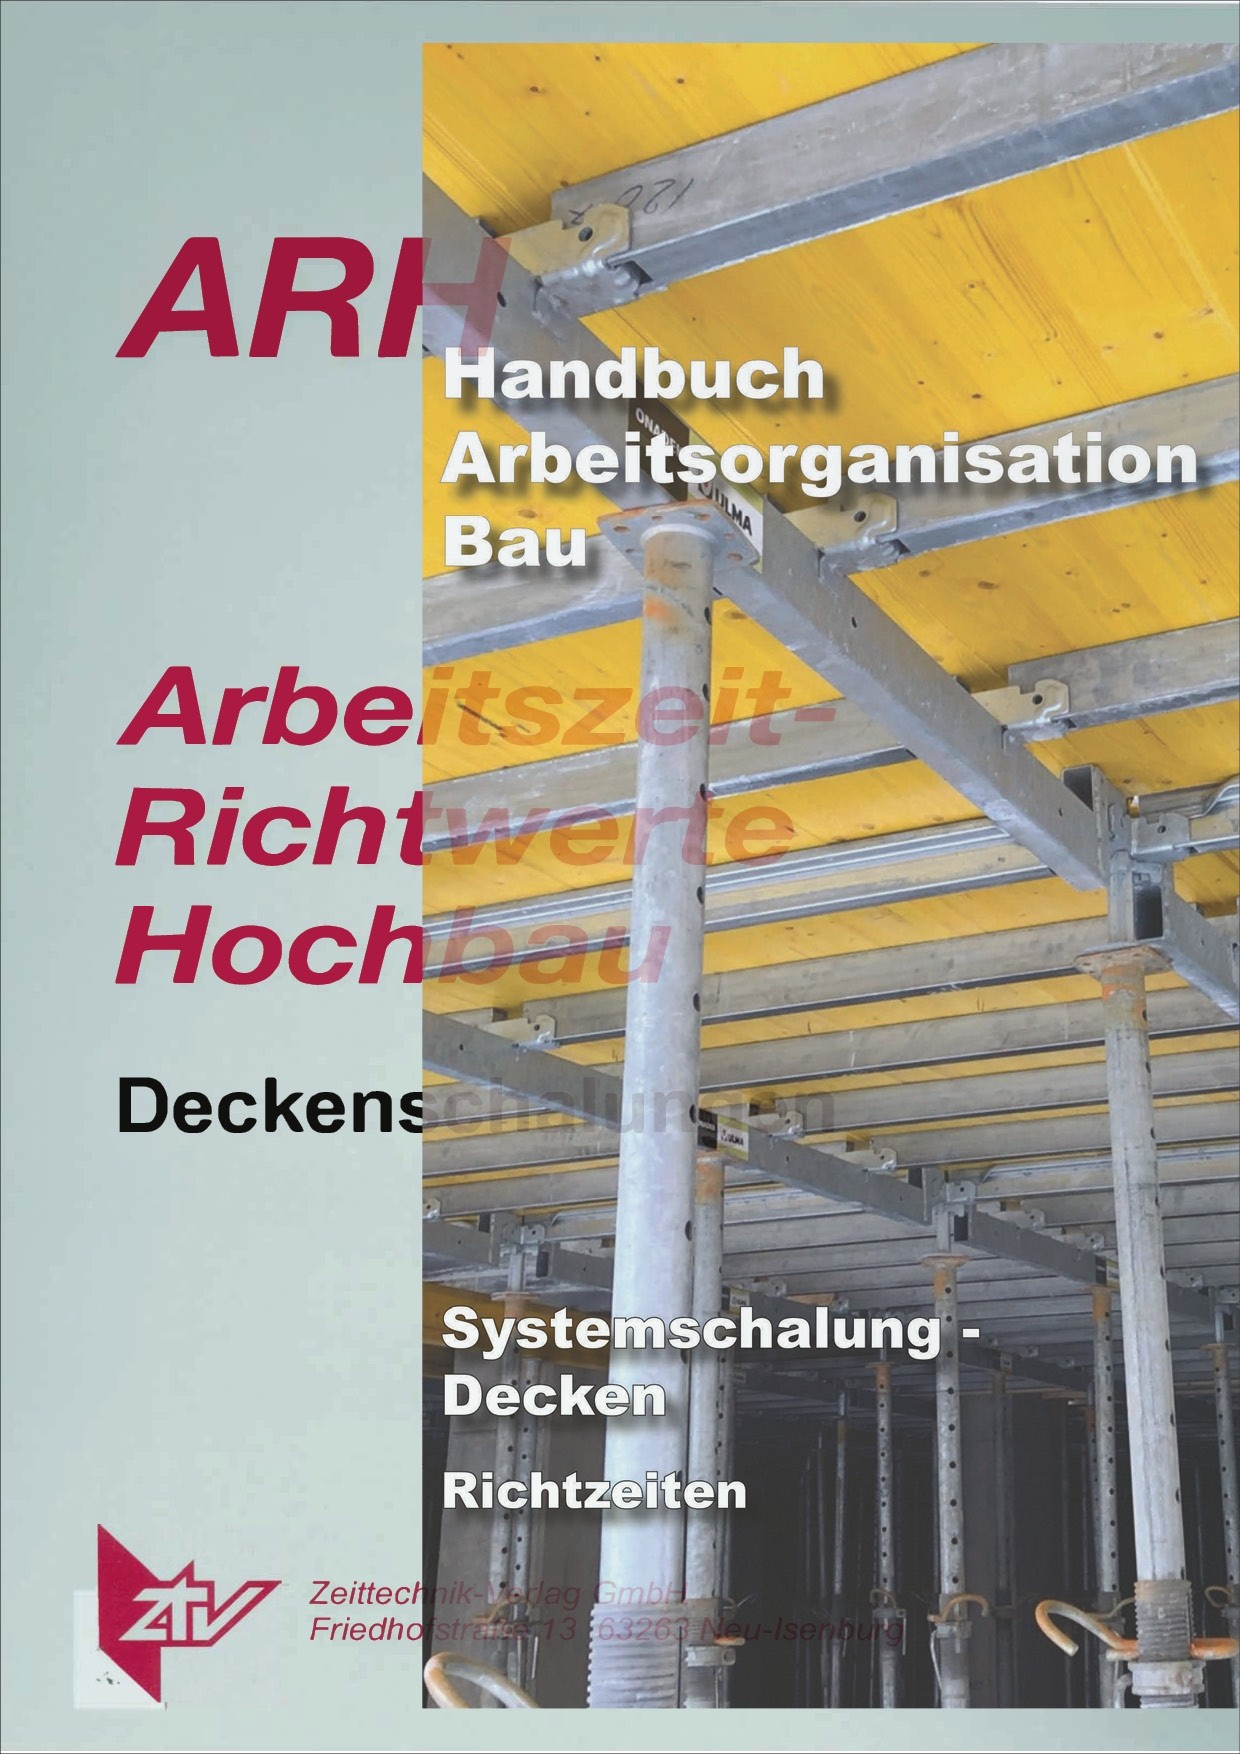 ARH-Tabelle Systemschalung Decken und Handbuch Arbeitsorganisation Bau Richtzeiten Deckenschalung (Download)